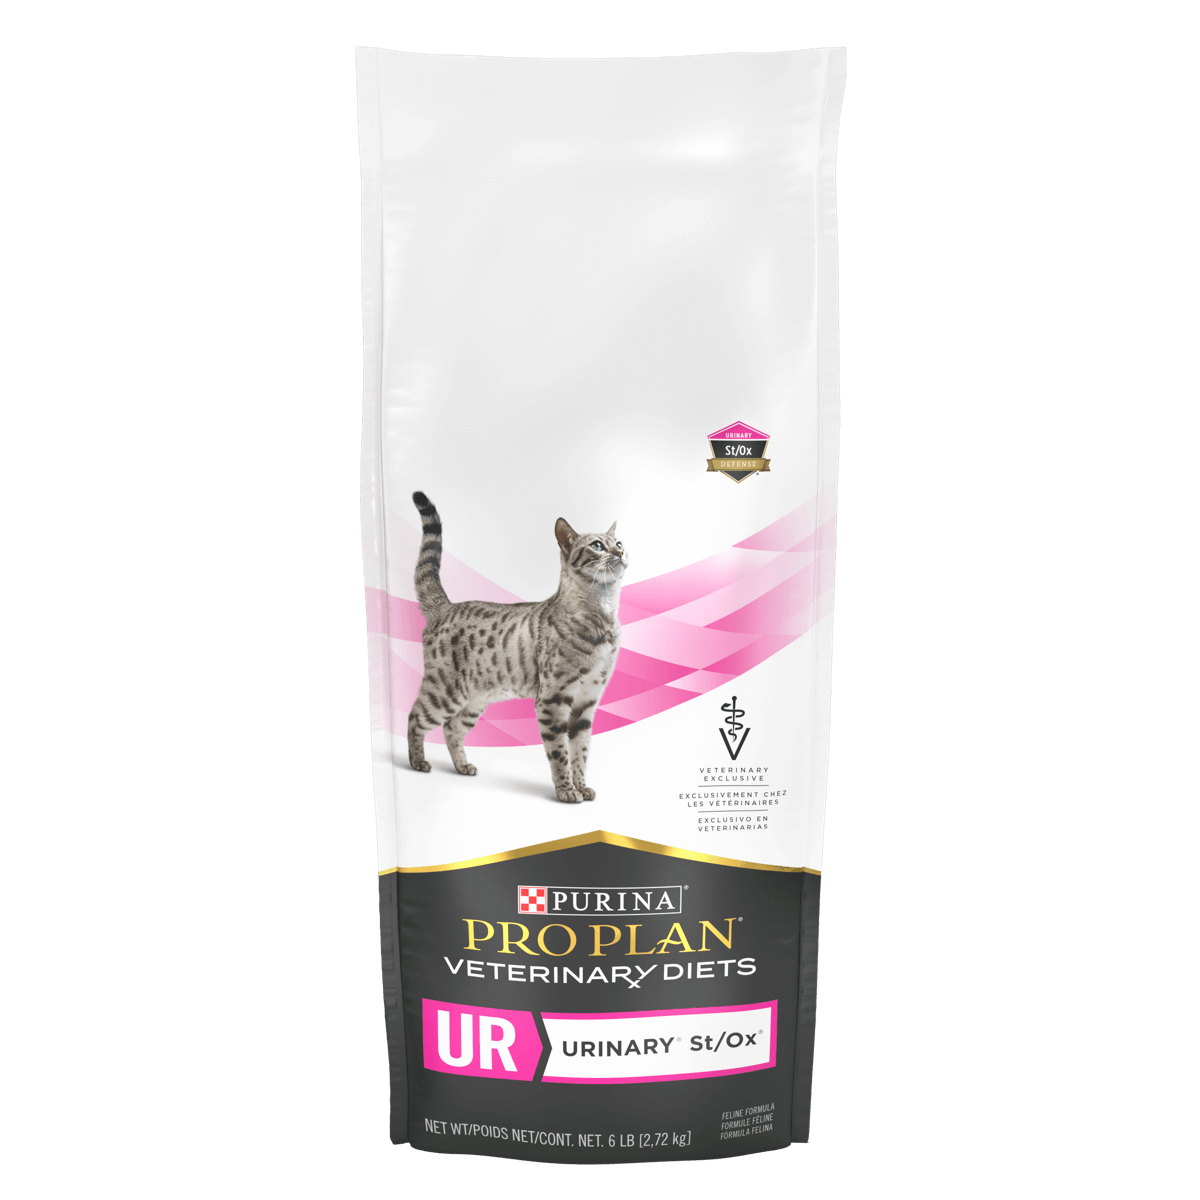 Pro plan veterinary diets urinary для кошек. Purina Urinary.